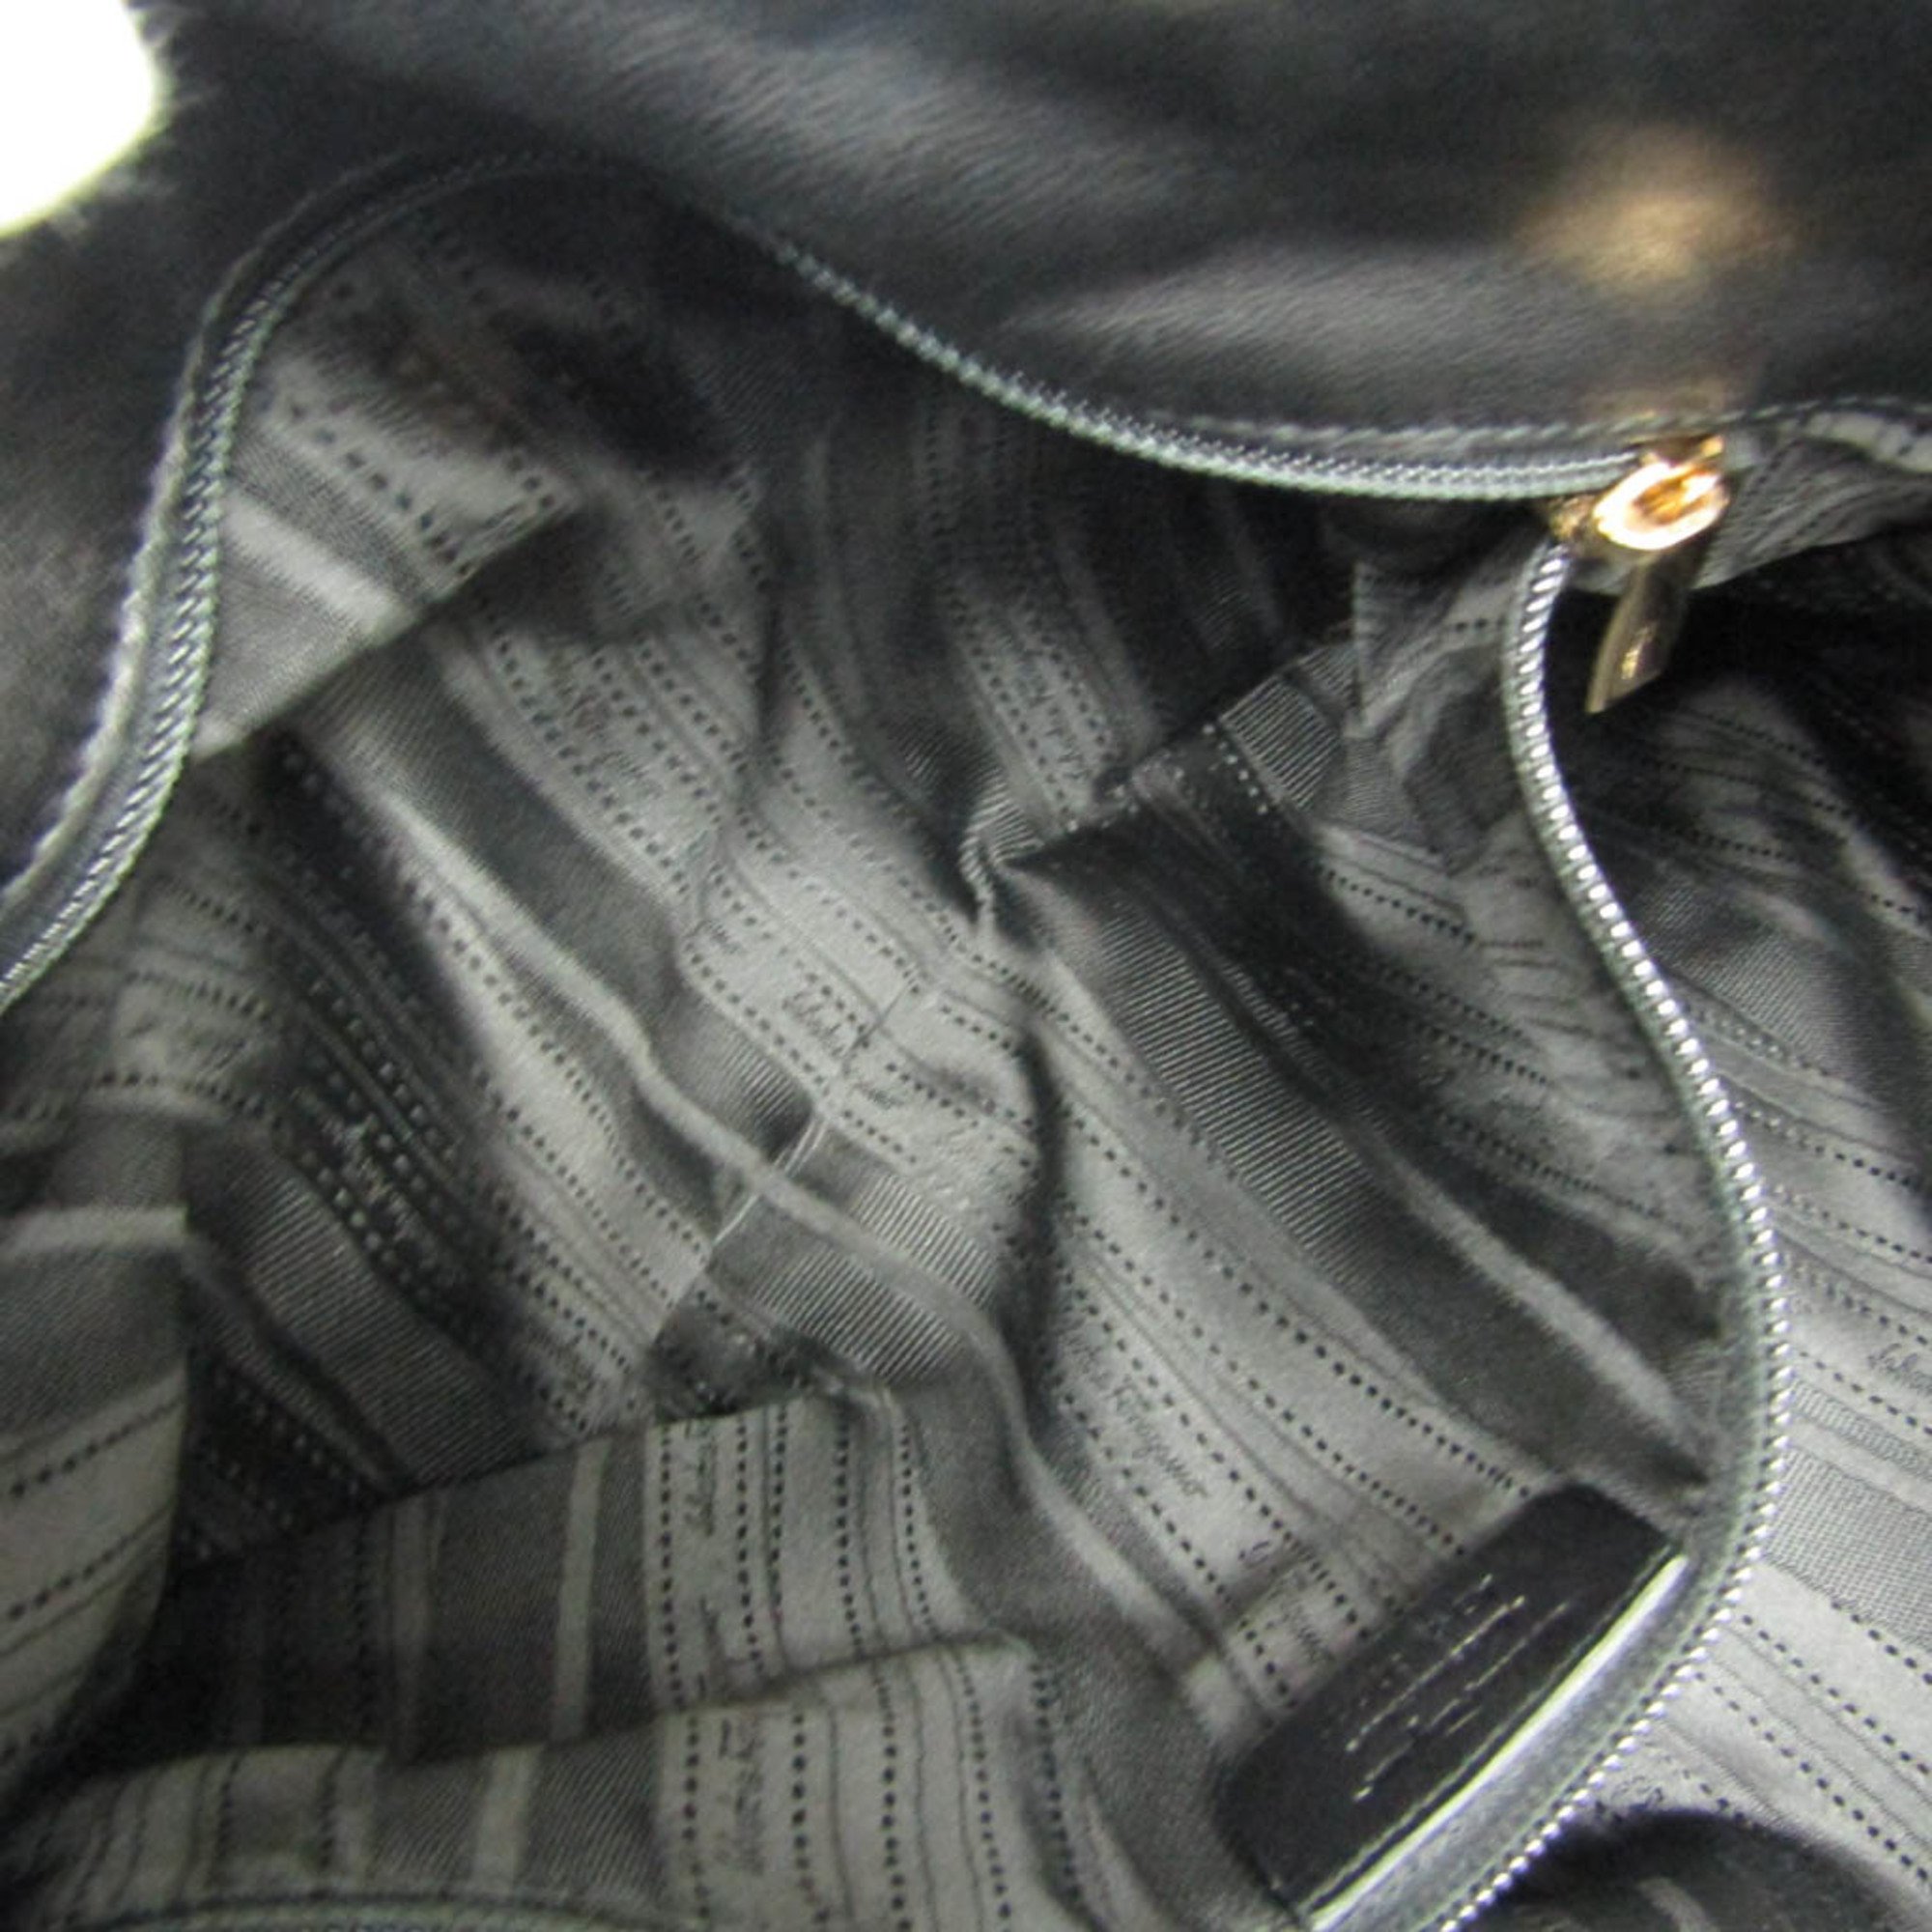 Salvatore Ferragamo Gancini AB-21 C003 Women's Leather Tote Bag Black